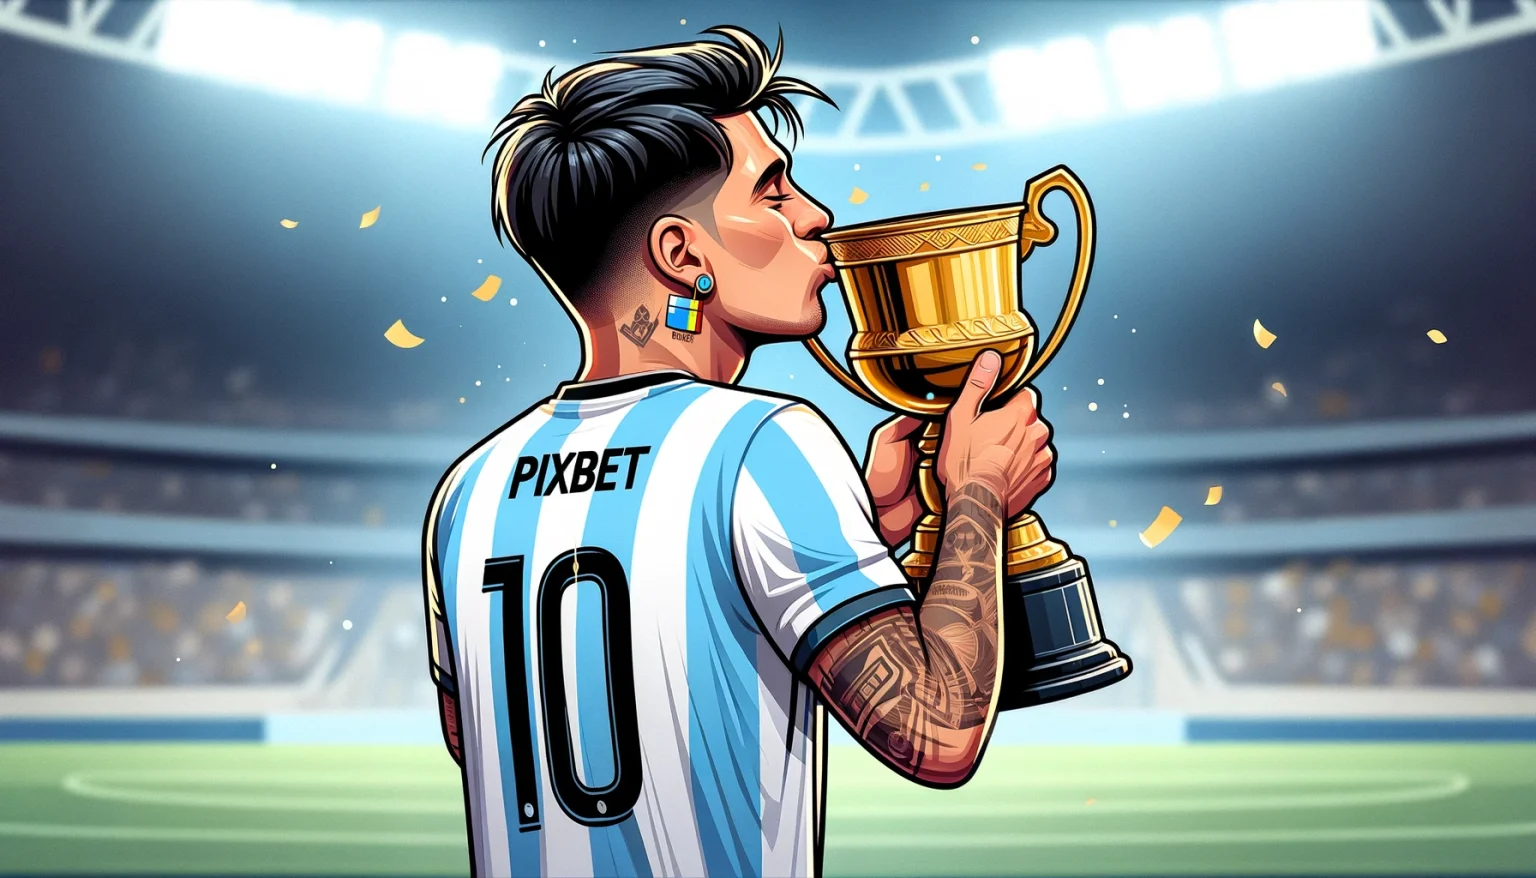 O Ícone do Futebol Lionel Messi